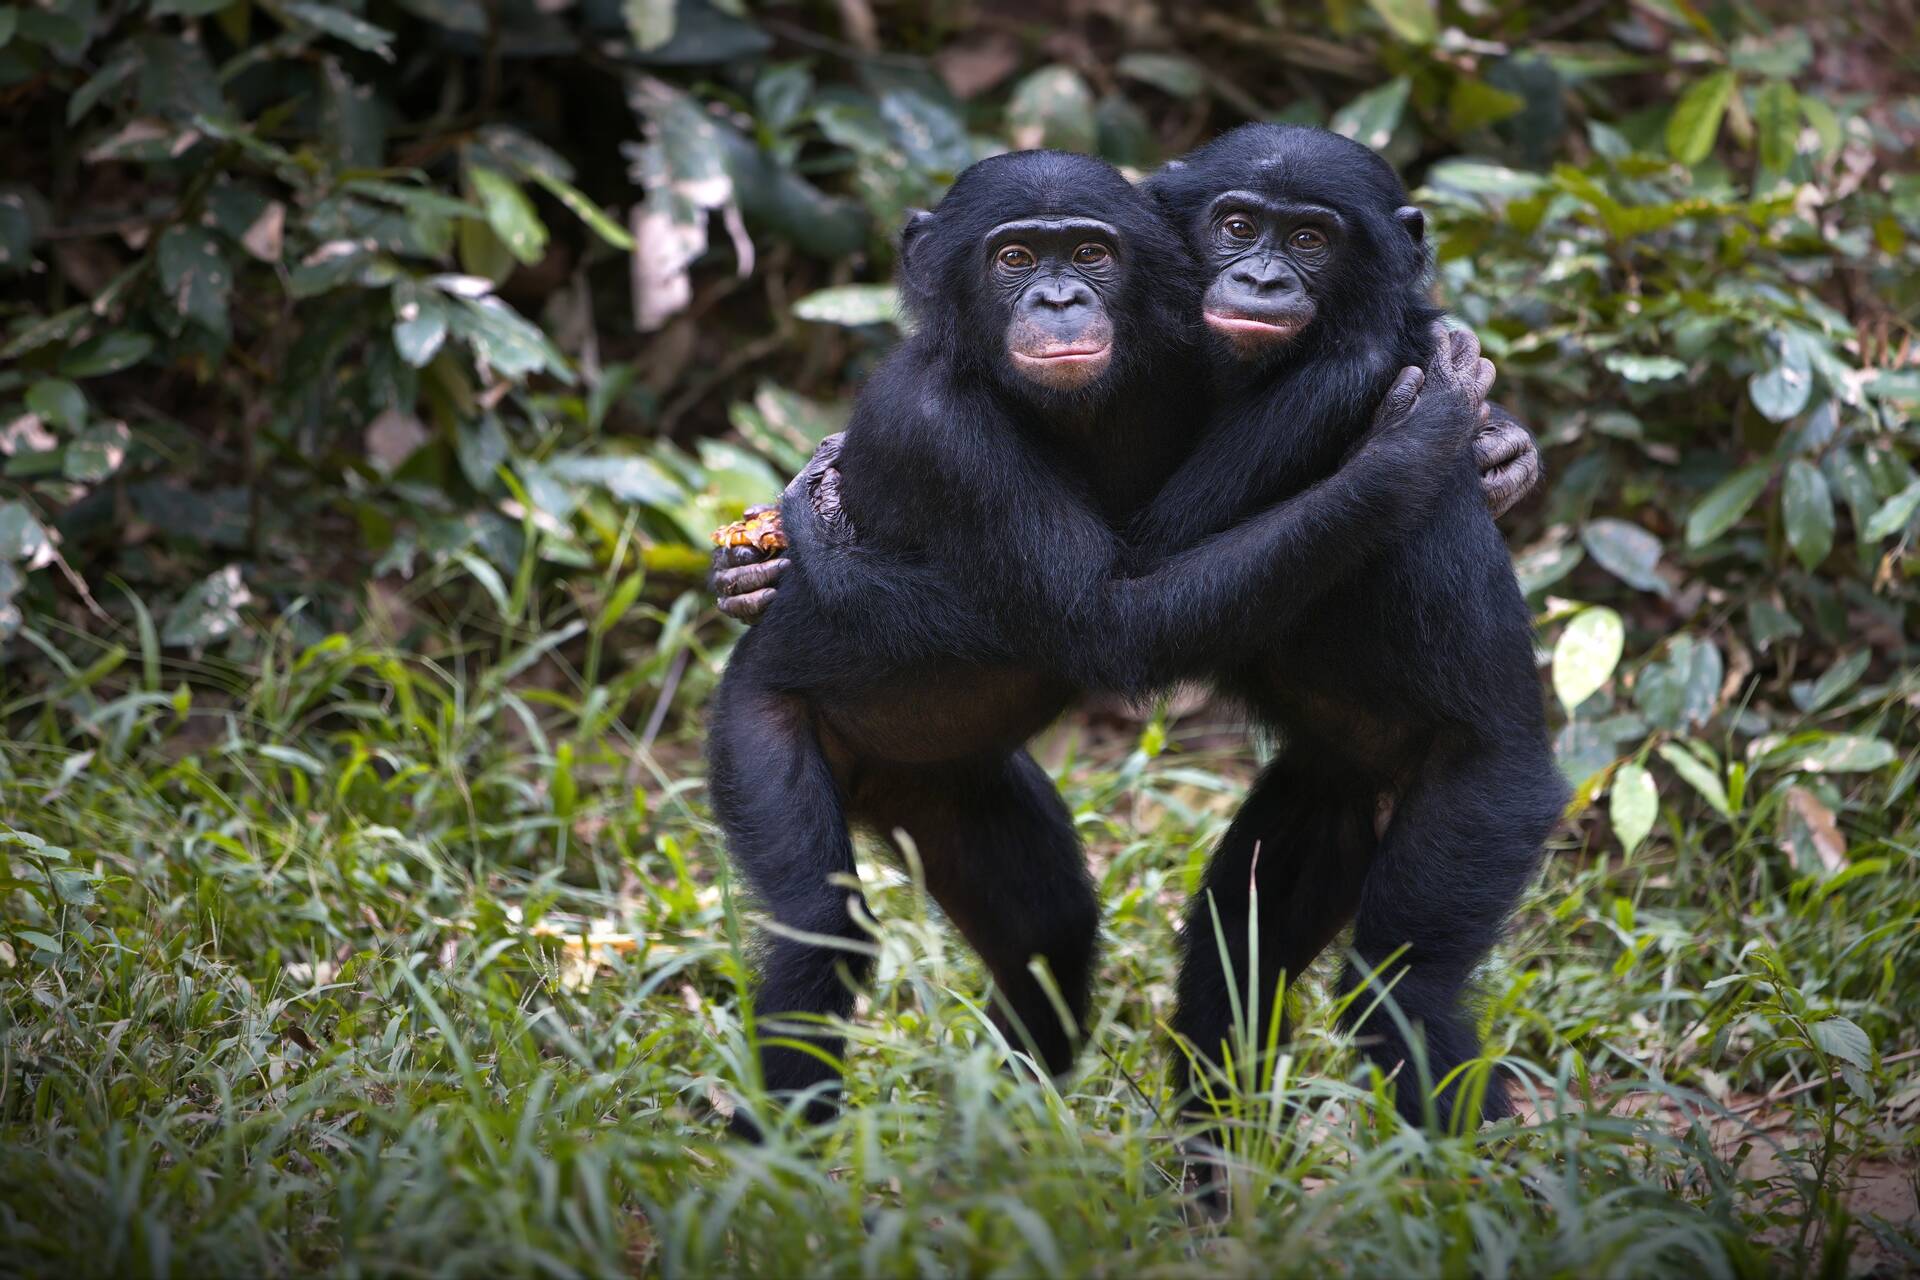 Maymunlar: Bazı bilim adamlarına göre Homo Sapiens terimi yetersiz kalıyor ve insanoğlunun da şempanze ve bonobo gibi Pan cinsi altında yeniden sınıflandırılması gerekiyor.